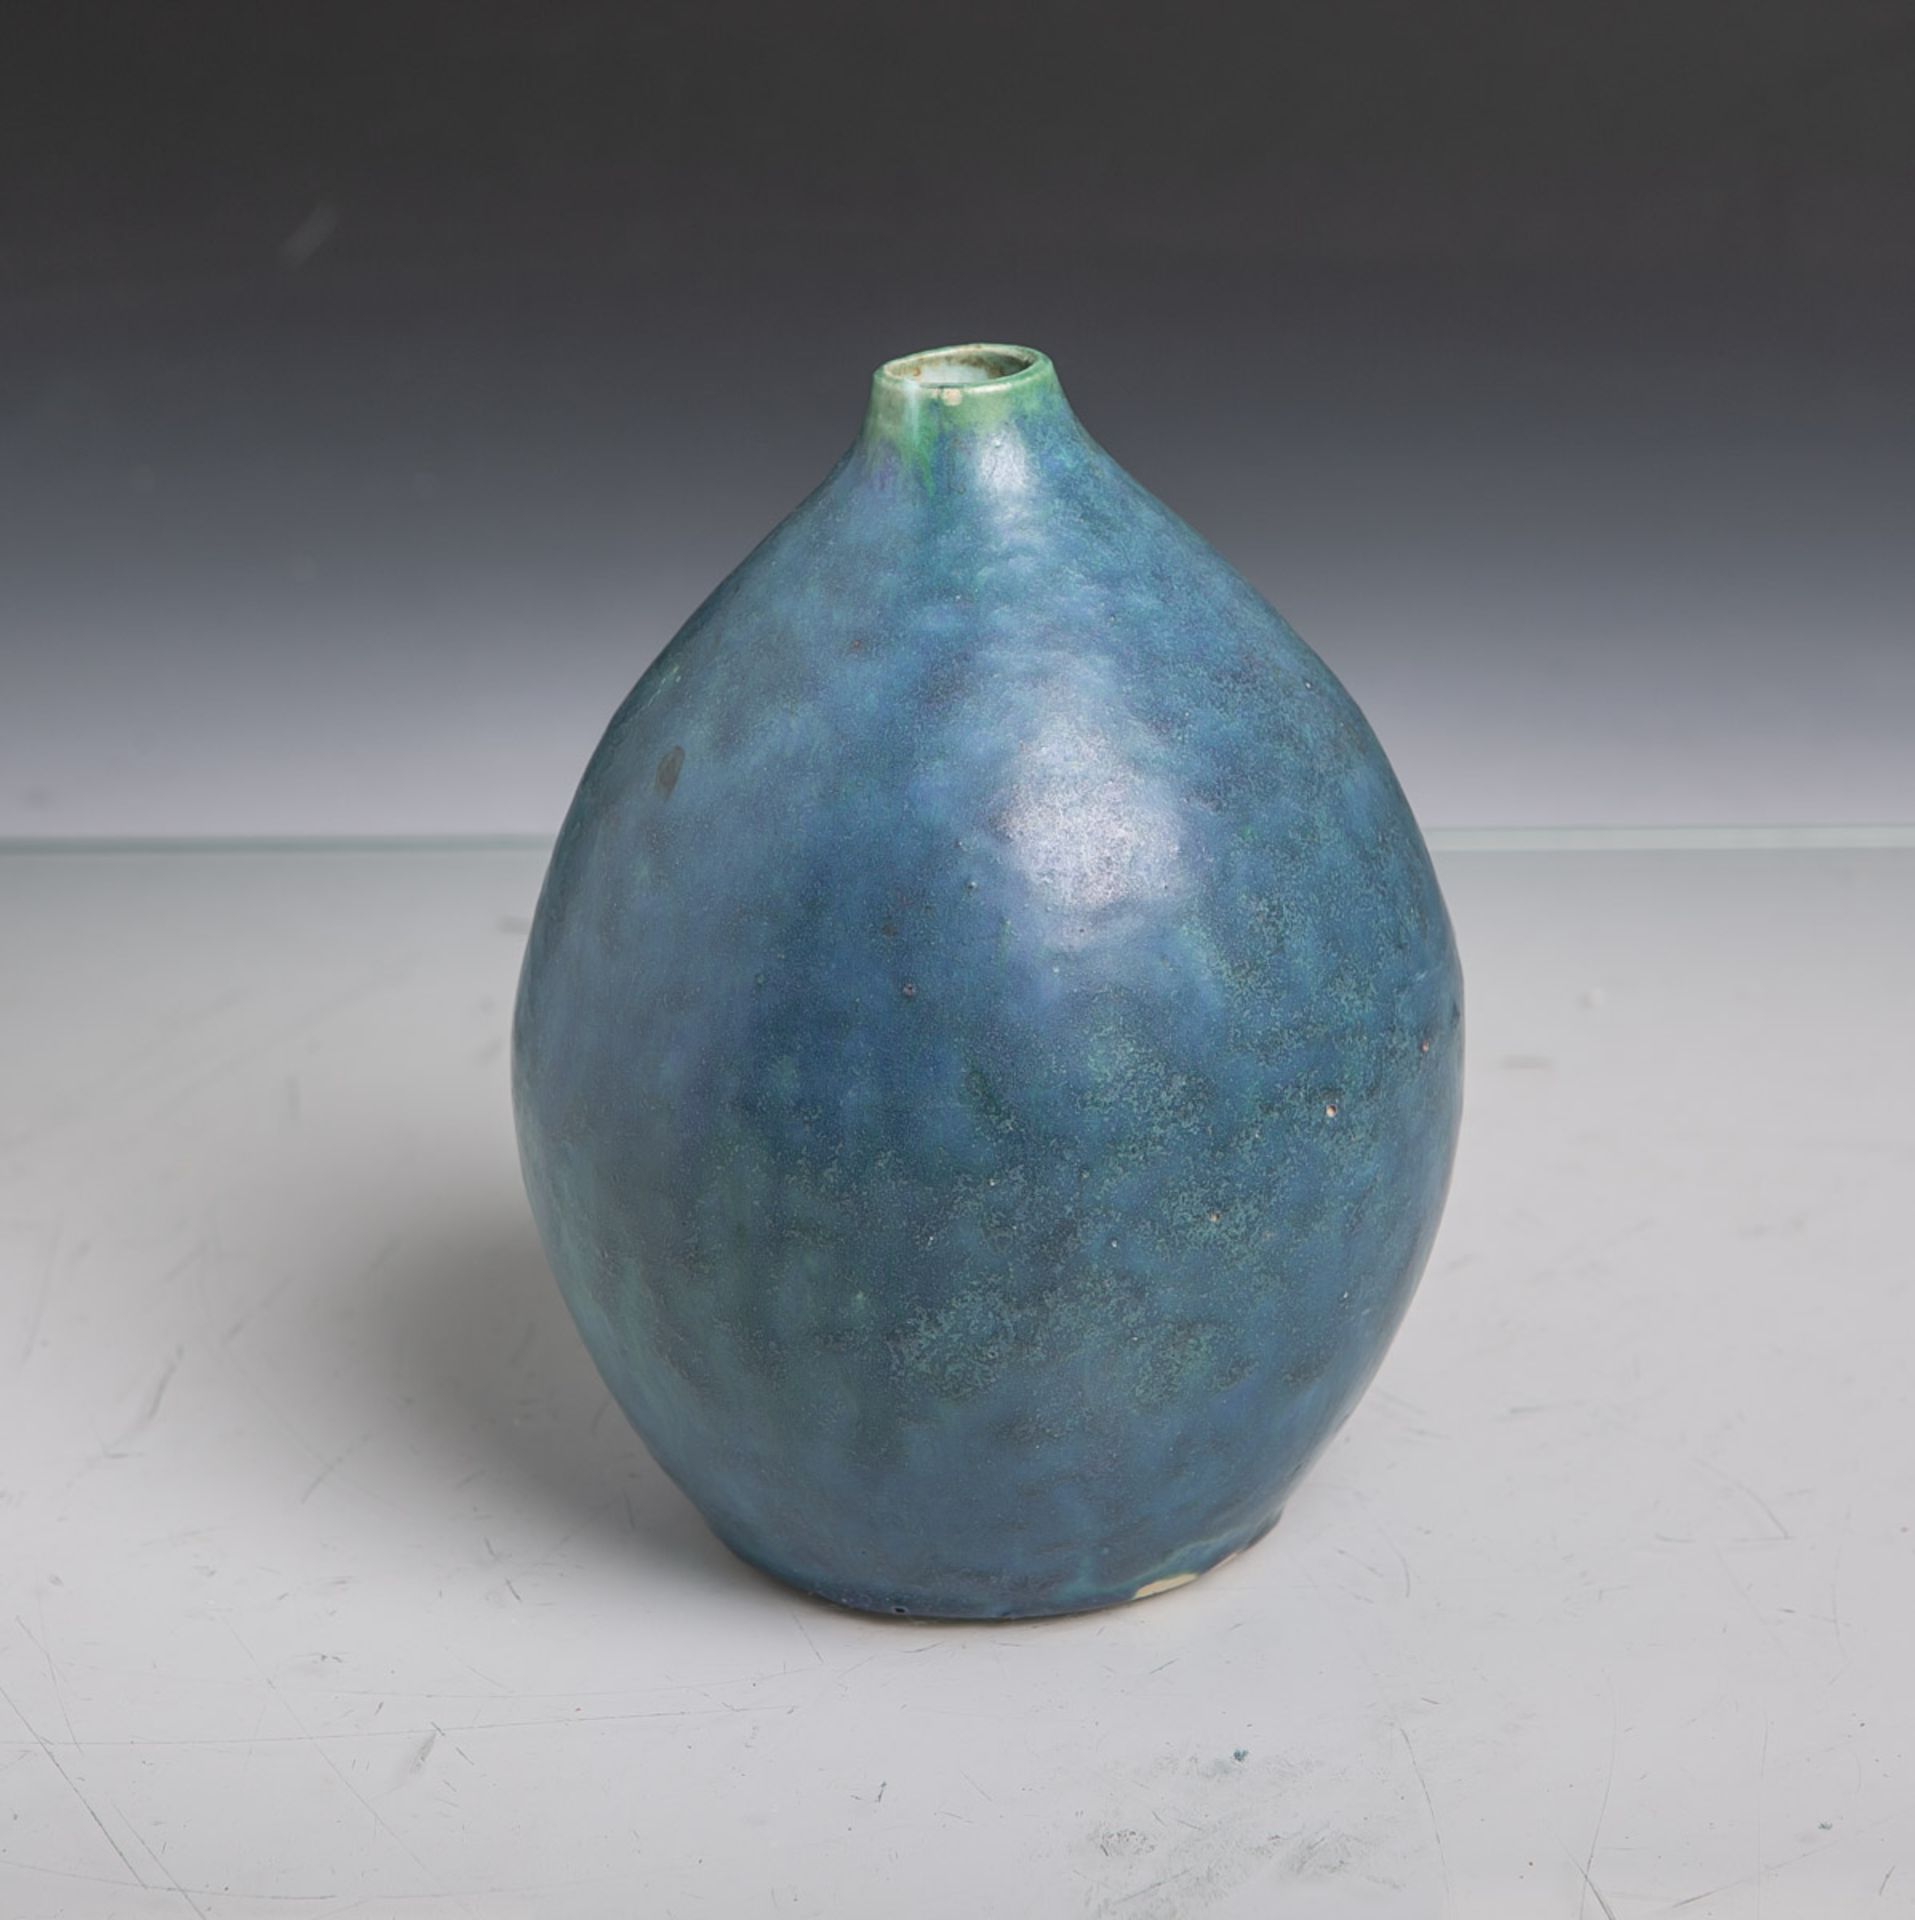 Kl. Keramikvase, bauchige Form, grün-blauer Verlauf, Unterboden sign. "Seifert", Dm. ca.